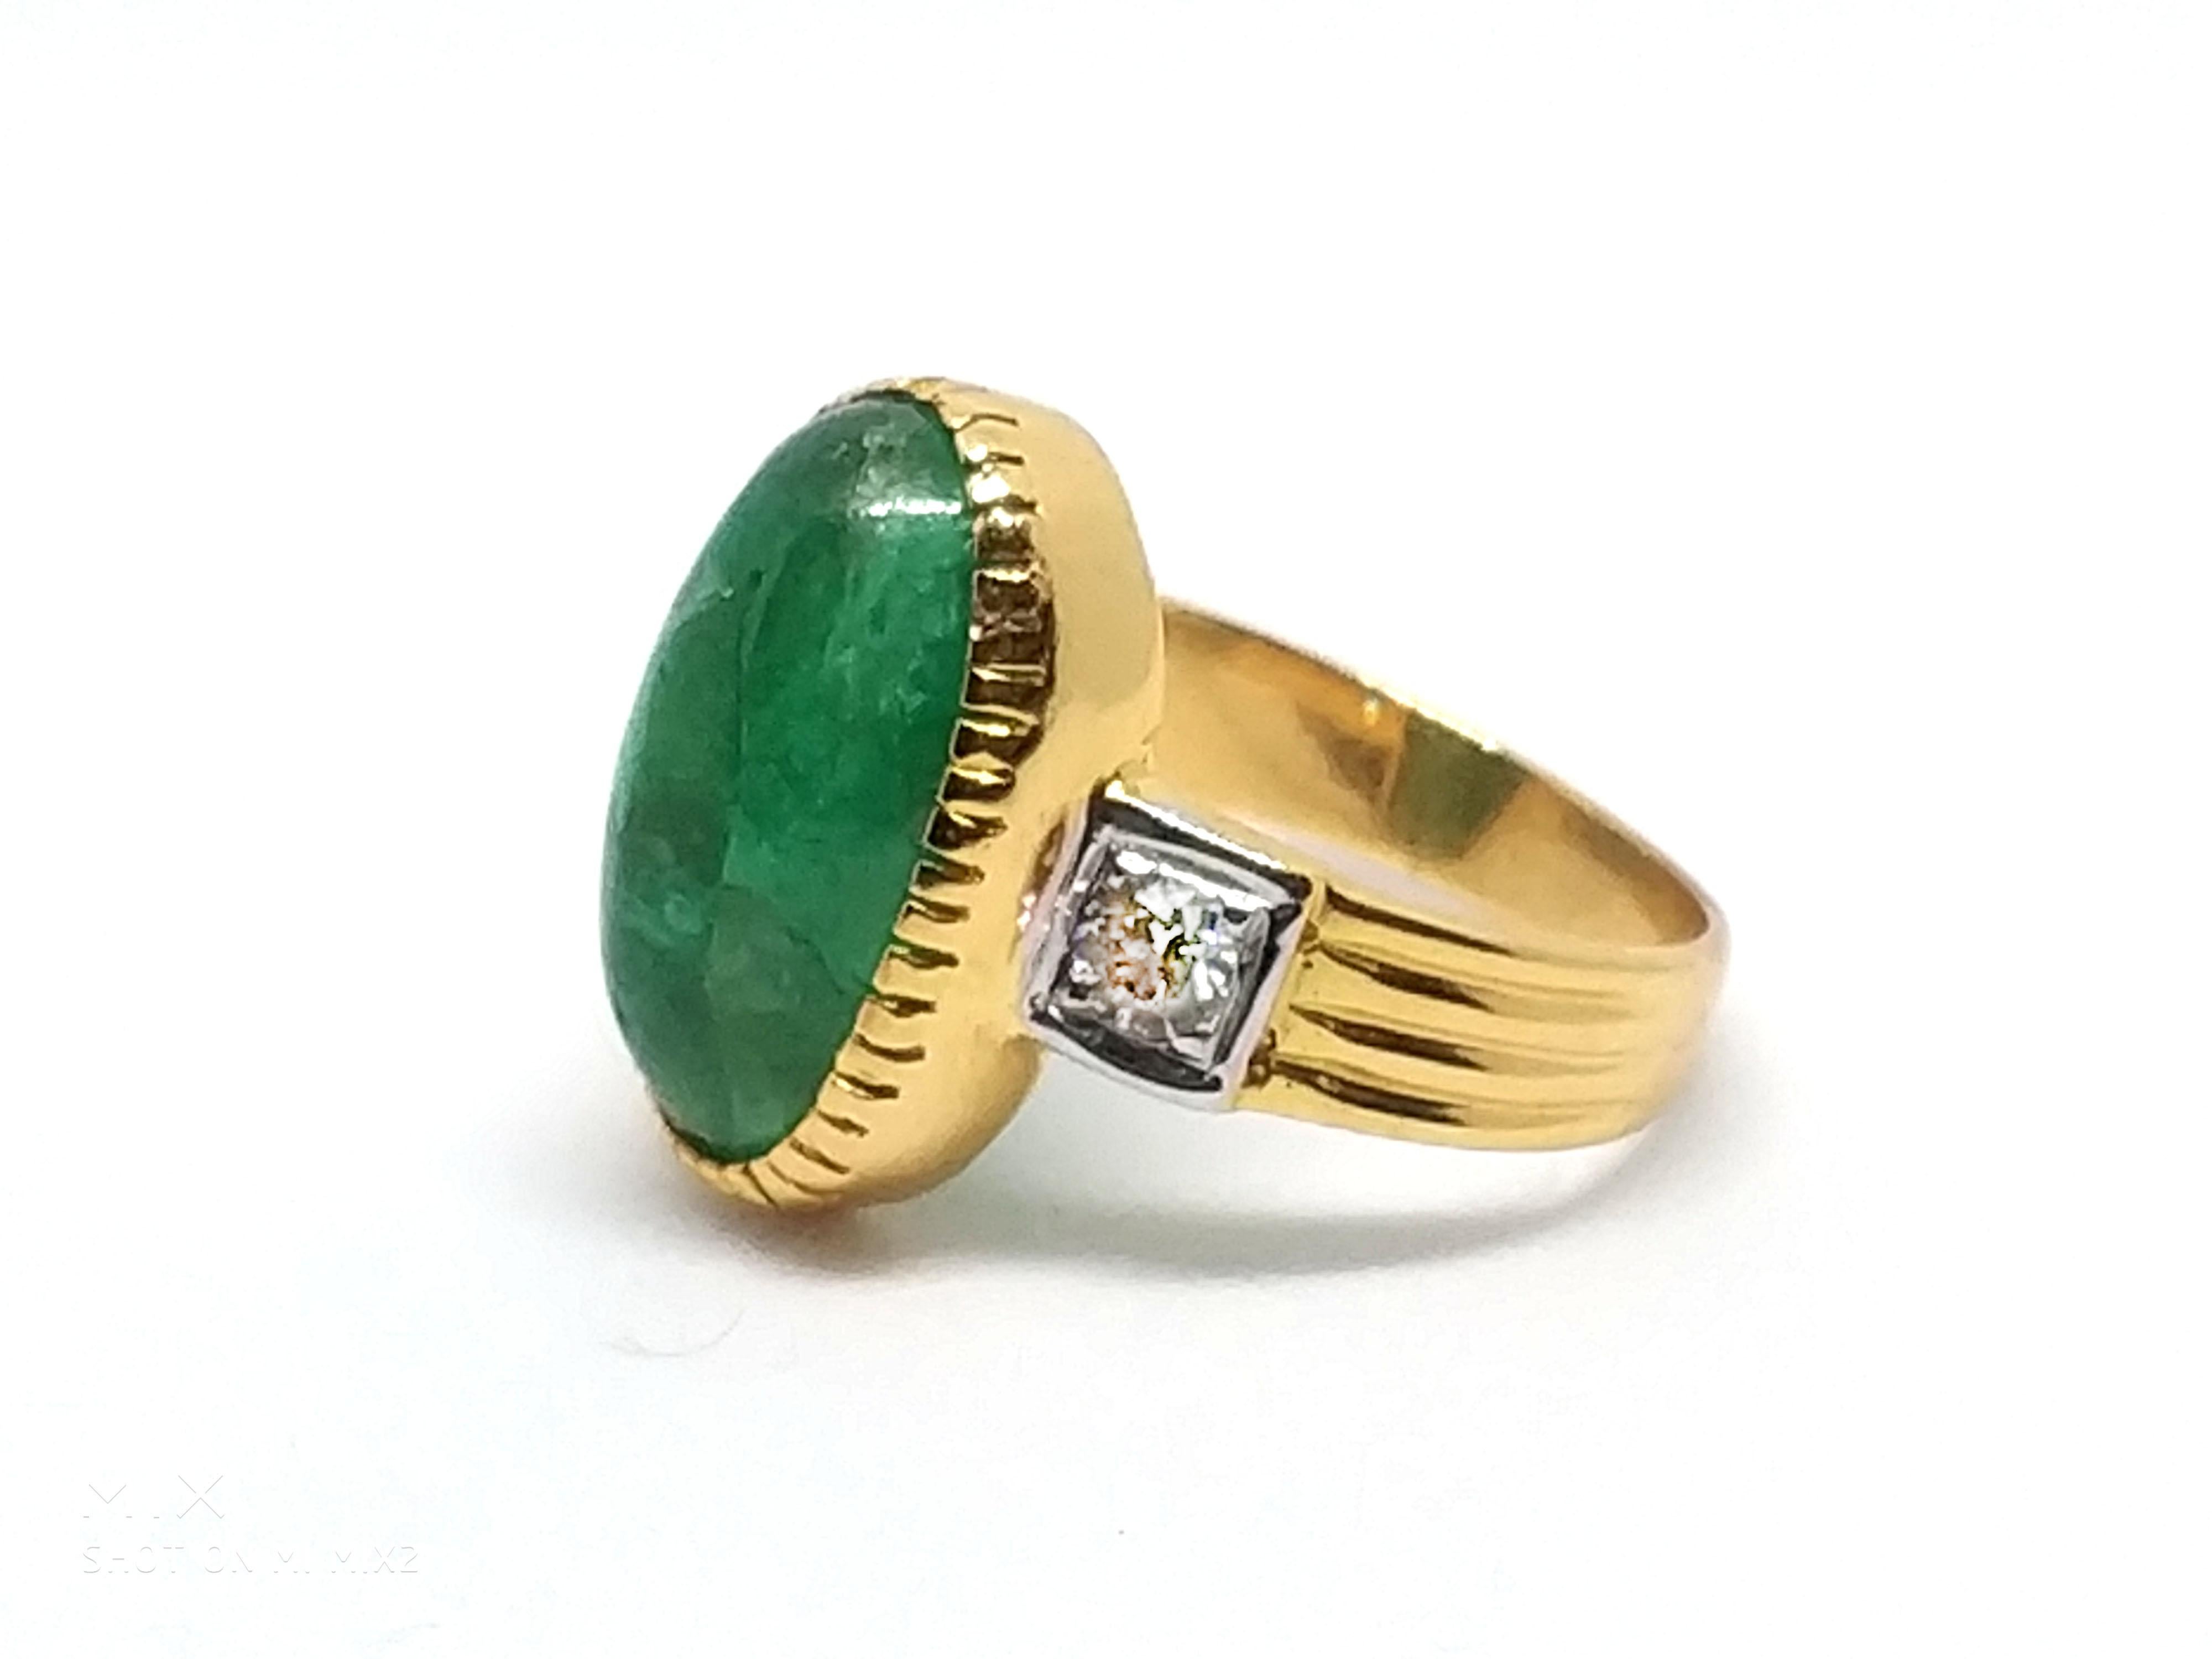 12 carat emerald